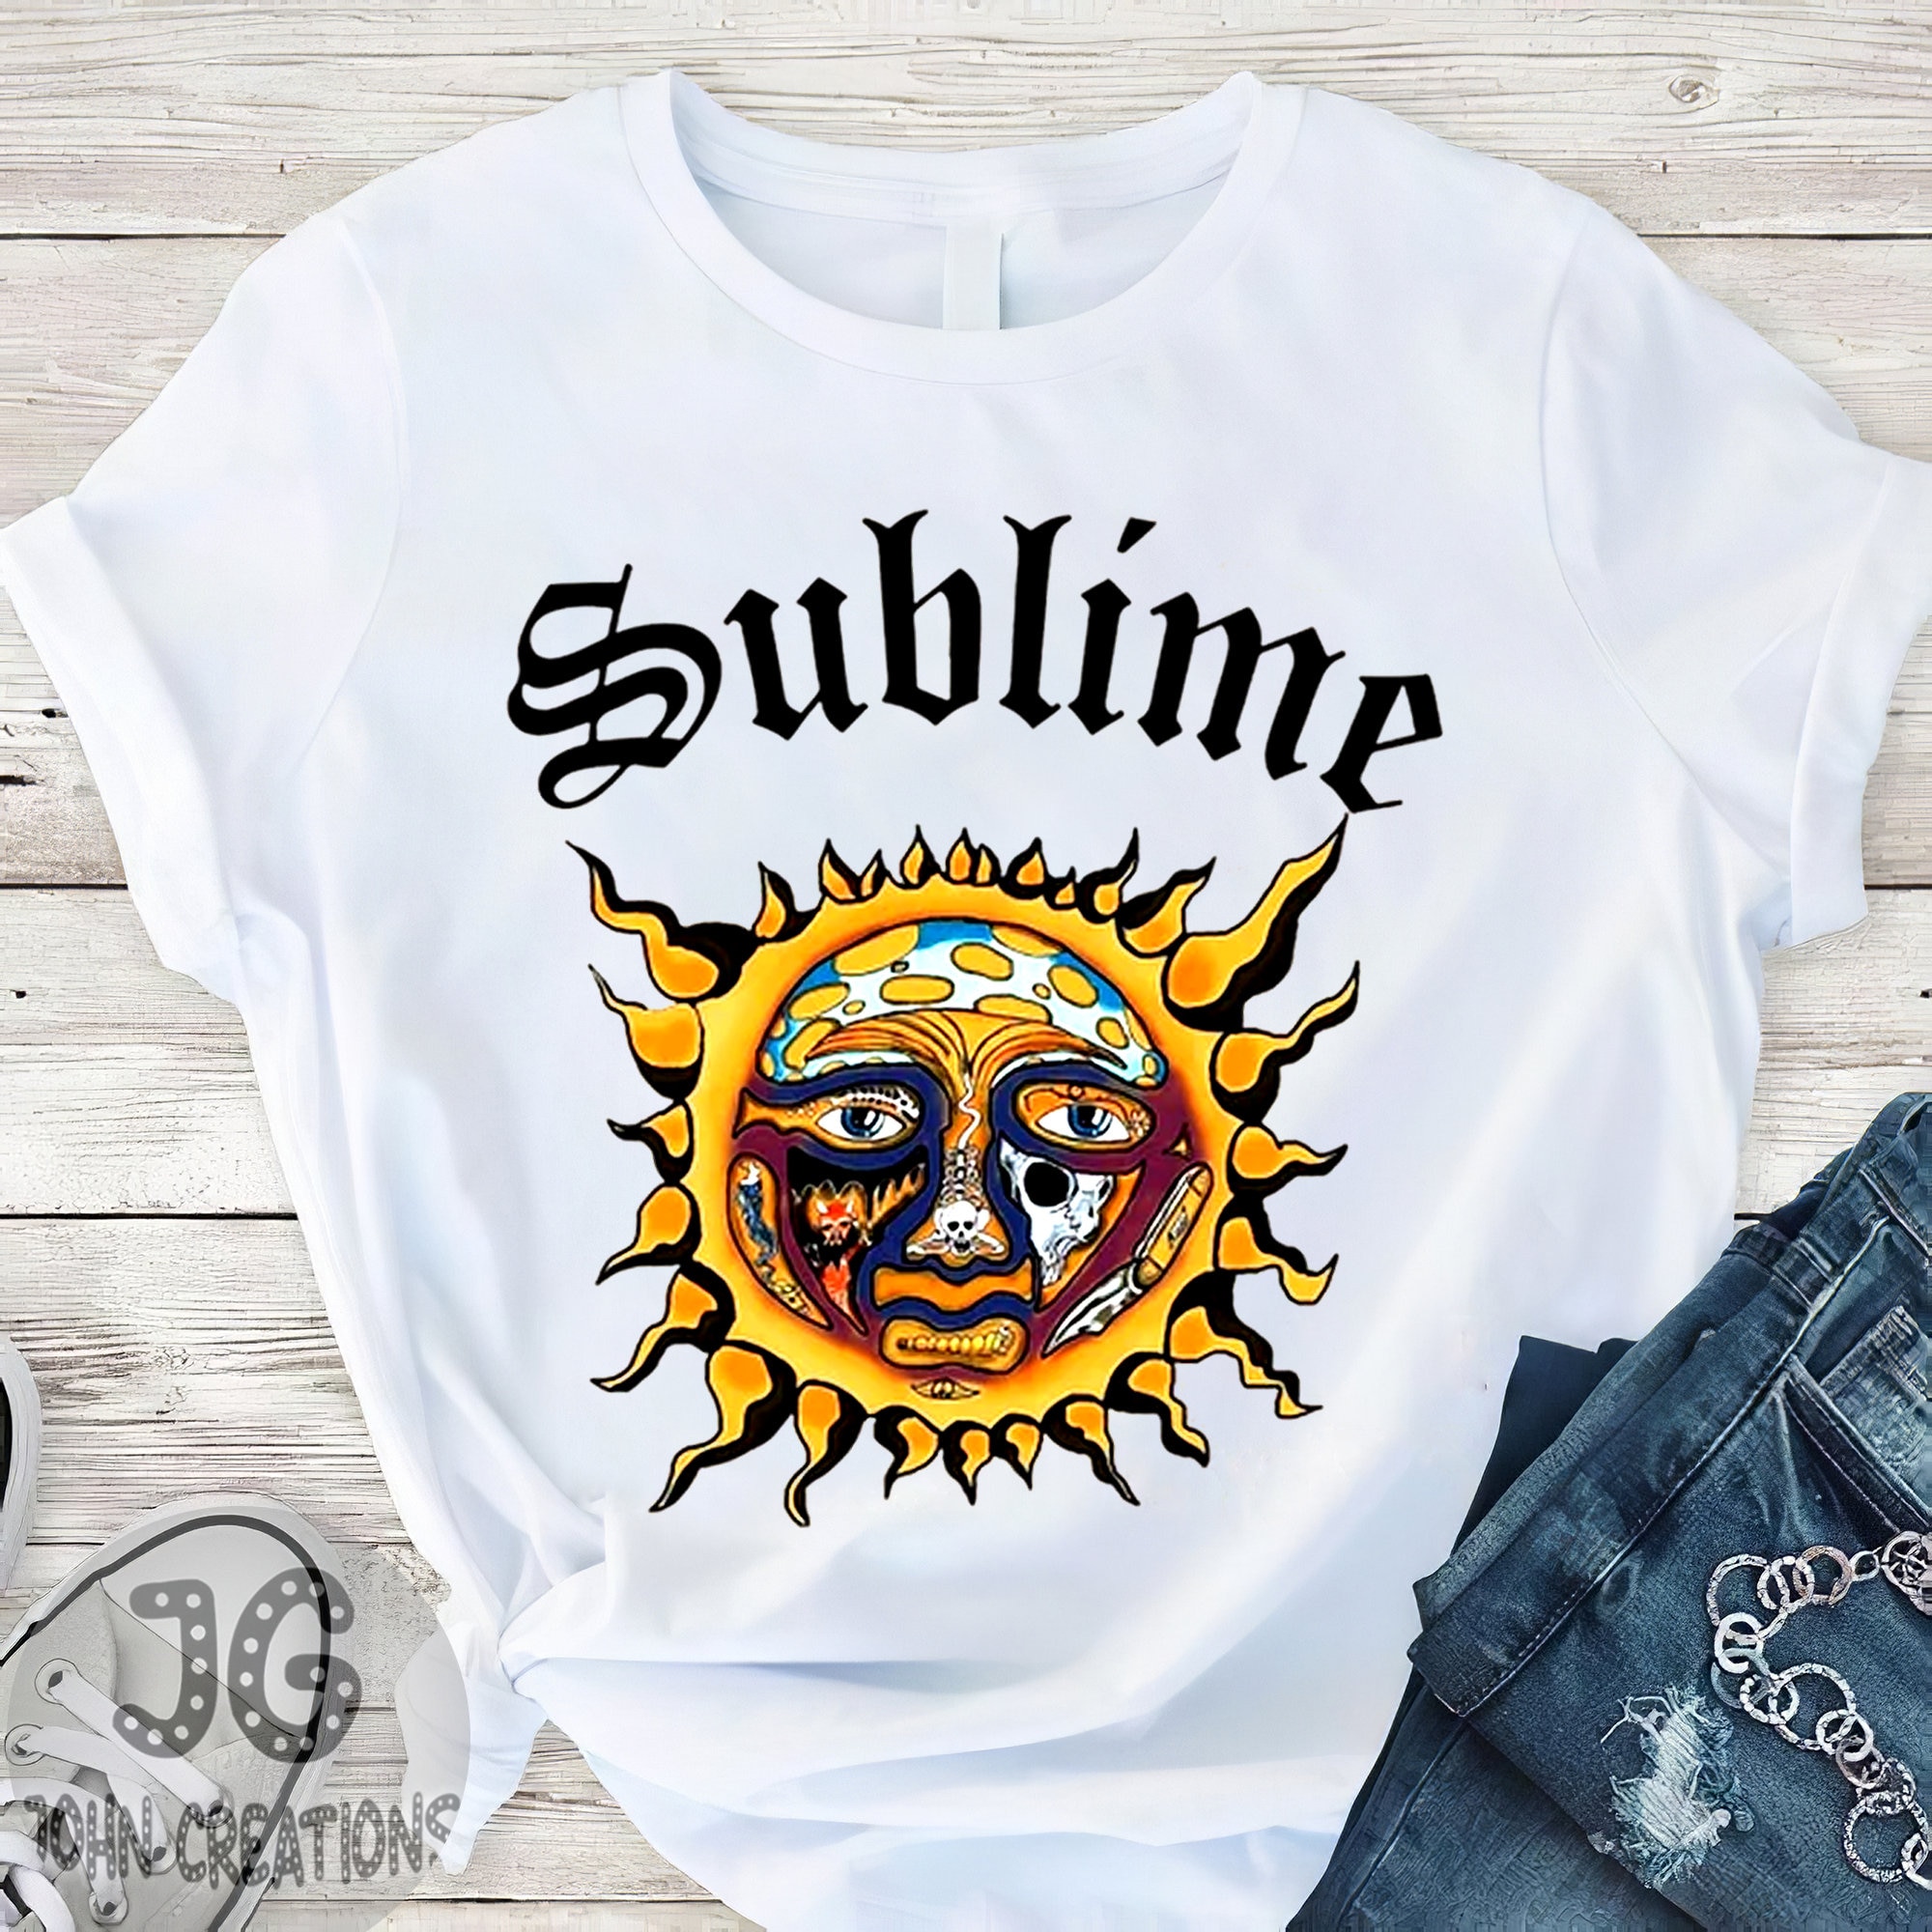 Sublime Logo T Shirt, Sublime Sun Shirt, Sublime Vintage Shirt, Sublime Vintage T Shirt